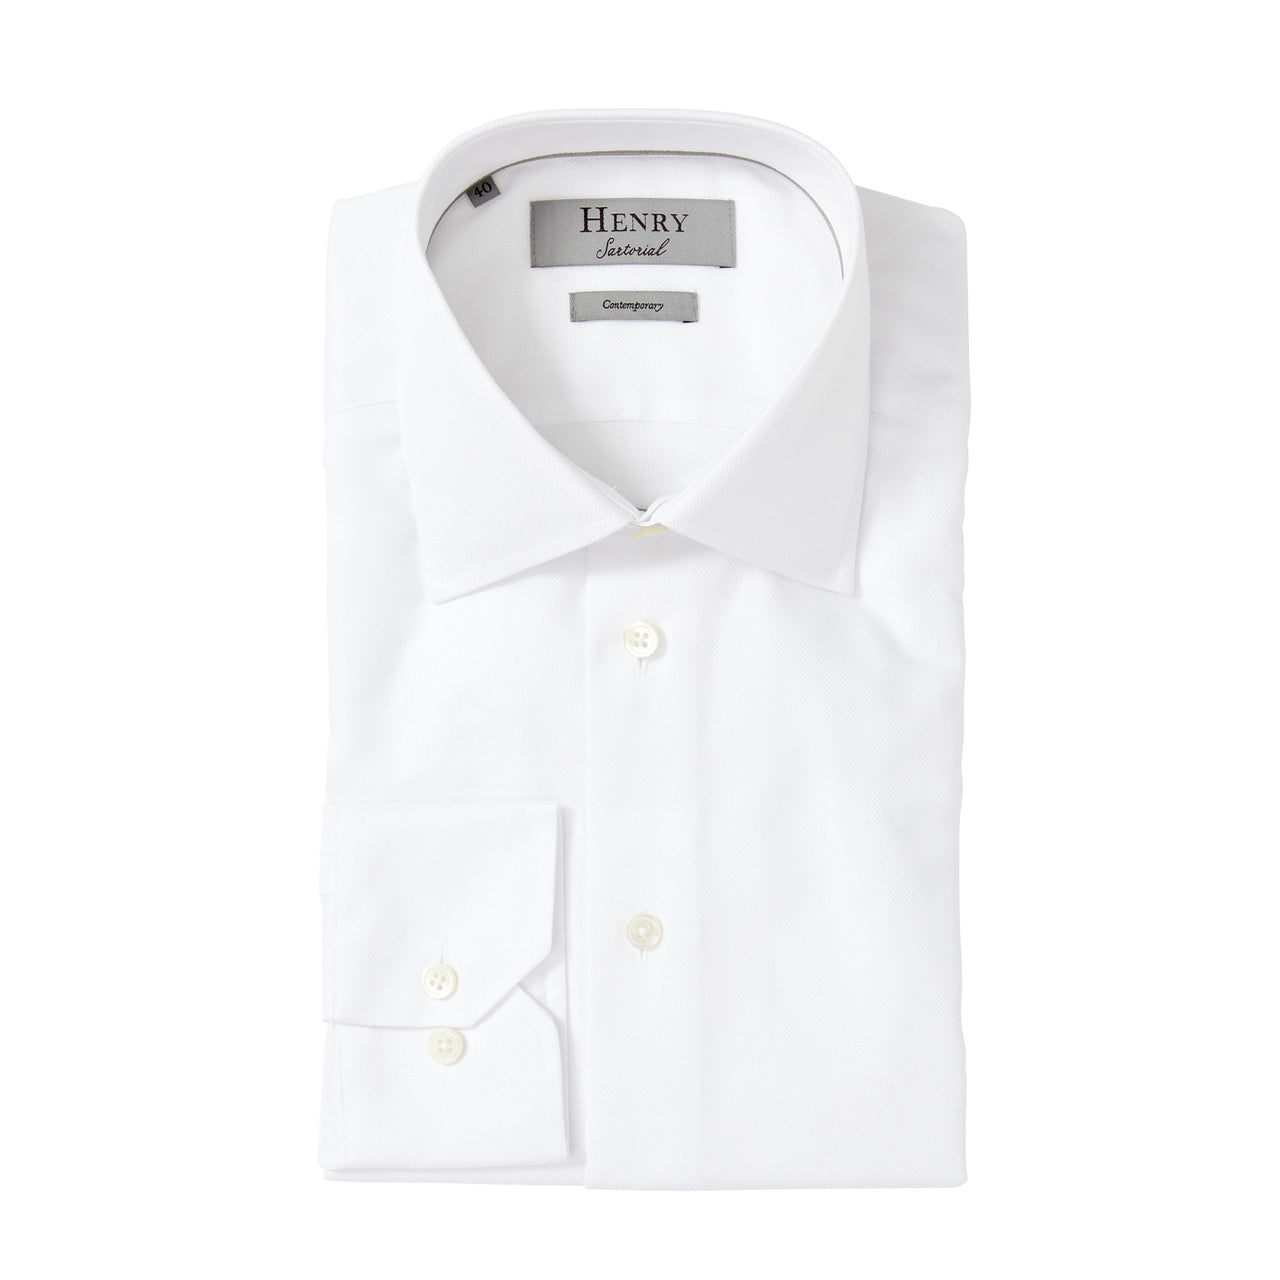 HENRY SARTORIAL Oxford Shirt Contemporary WHITE